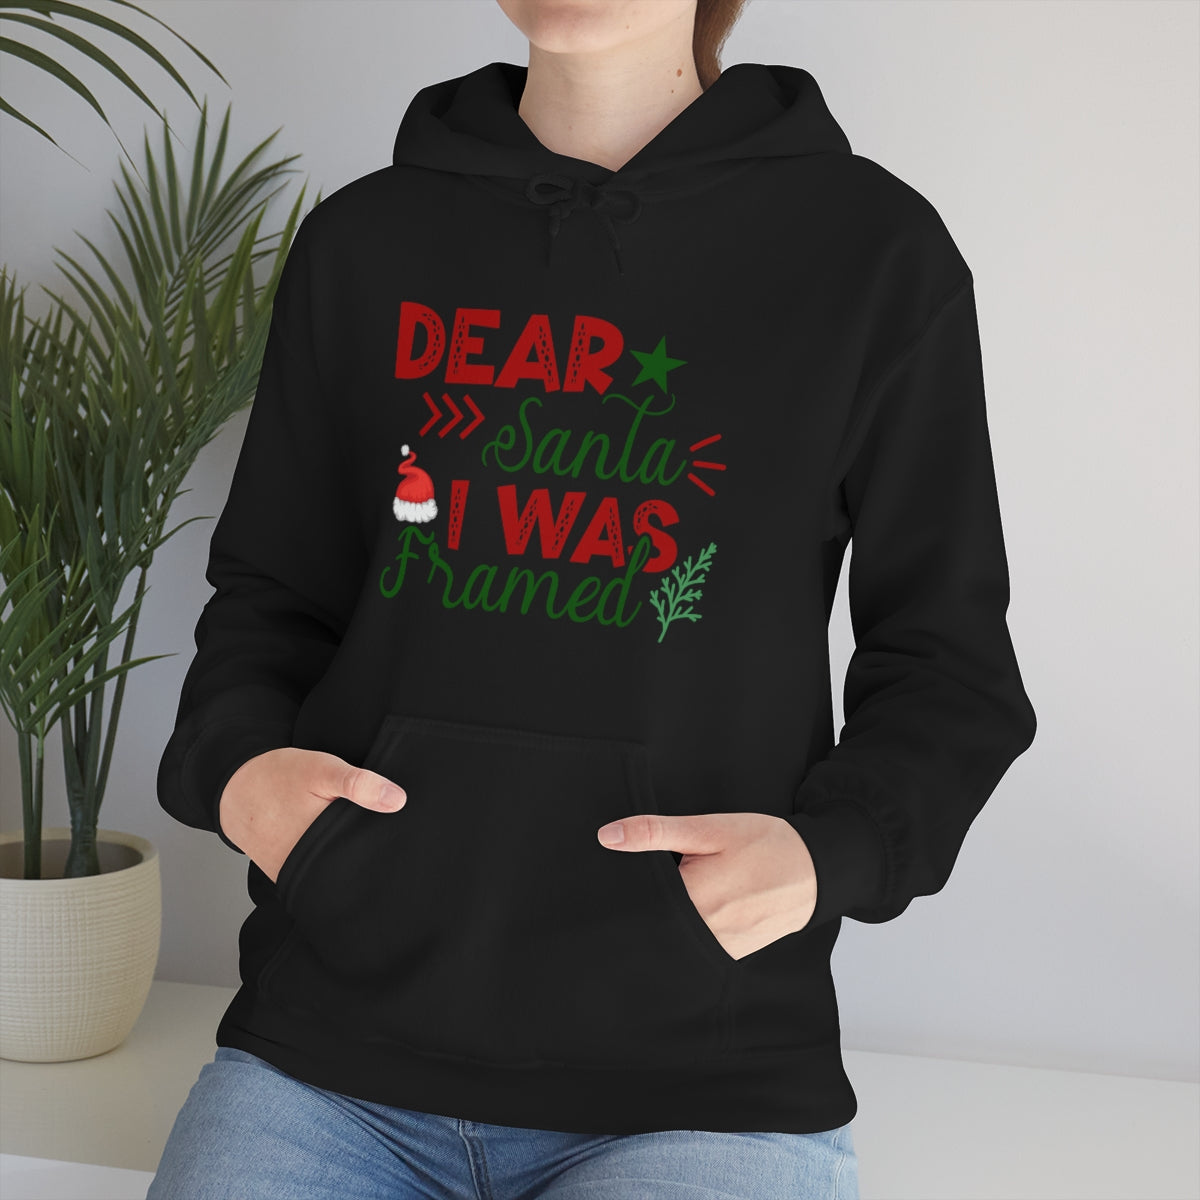 Merry Christmas Hoodie Unisex Custom Hoodie , Hooded Sweatshirt , Dear Santa I Was Framed Printify